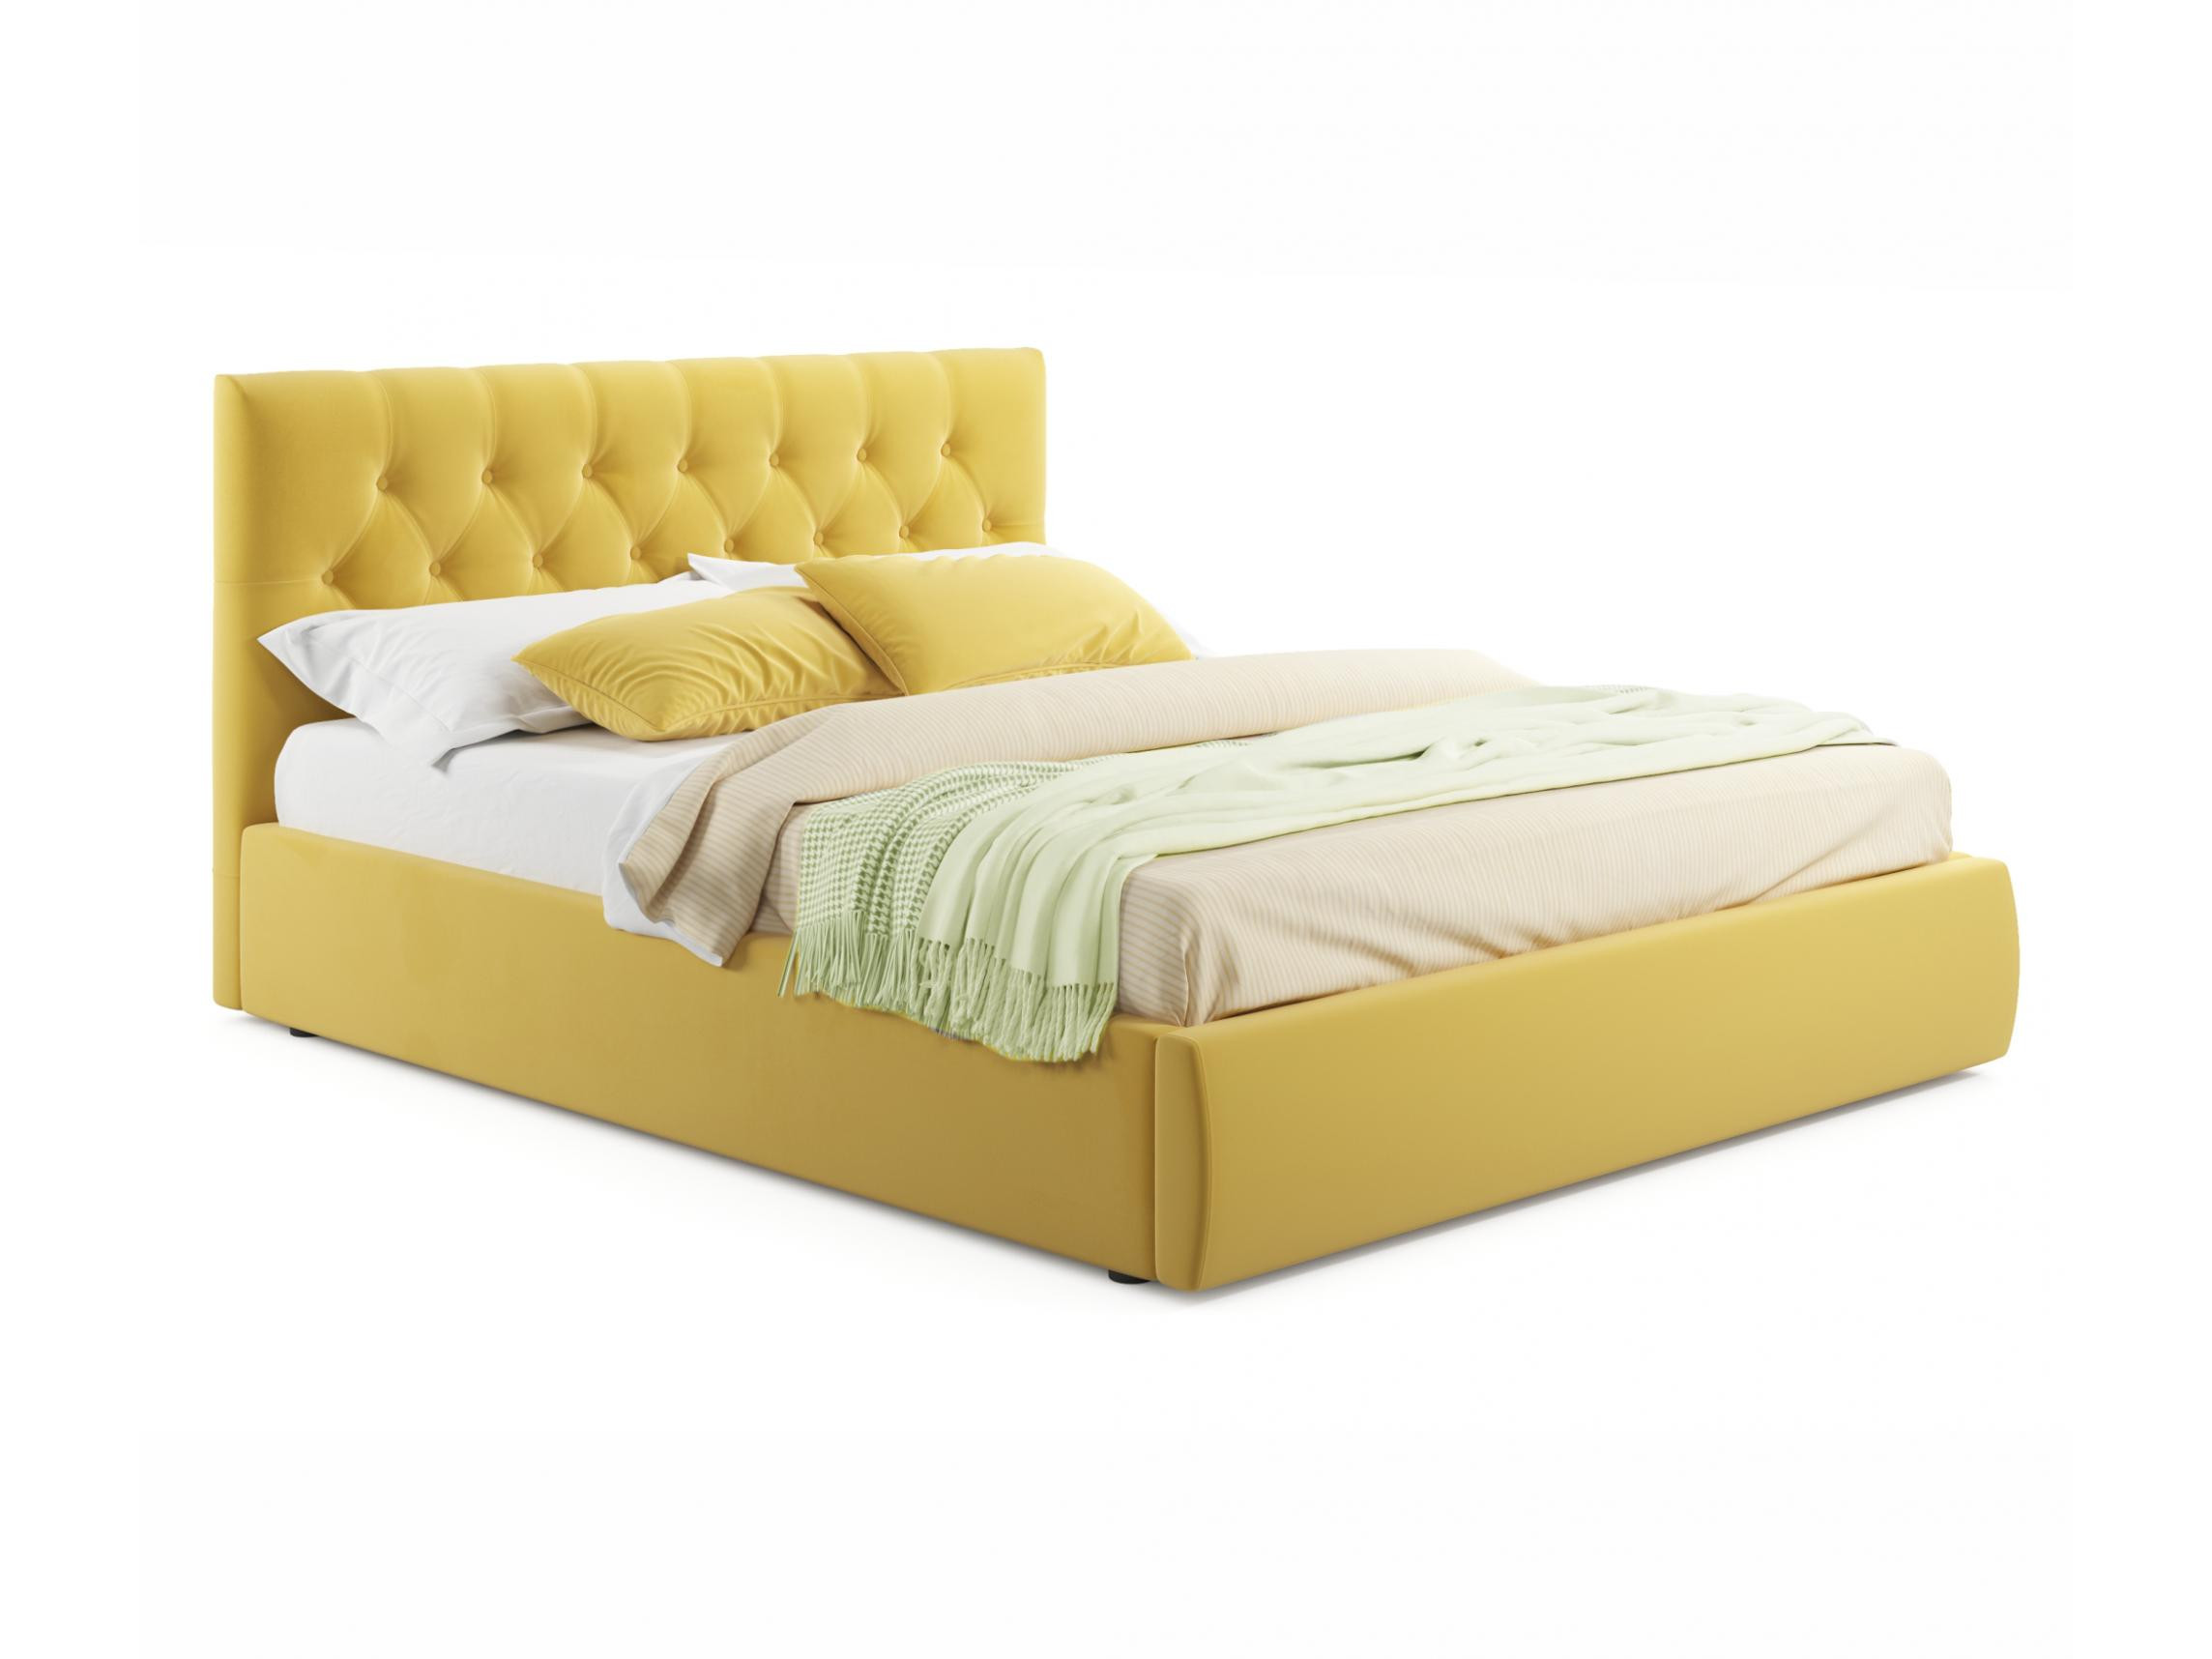 Мягкая кровать Verona 1800 желтая с ортопедическим основанием желтый, Желтый, Велюр, ДСП